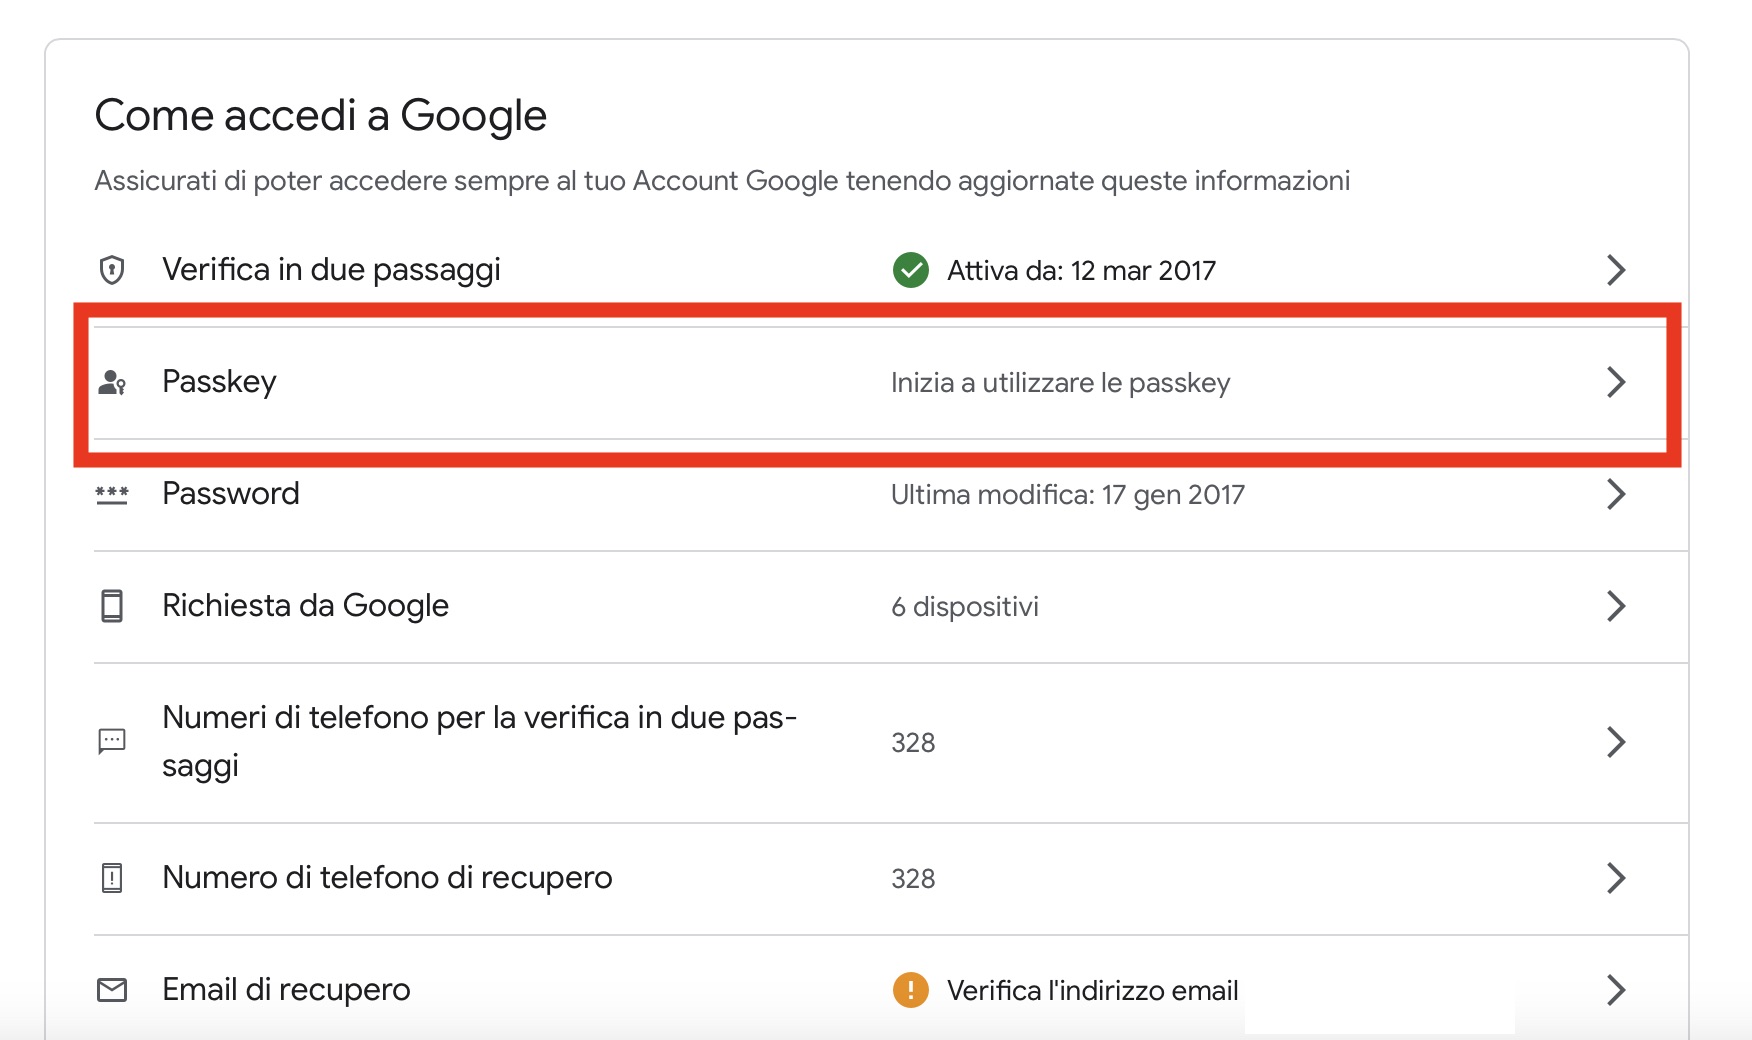 Google adotta Passkey per sostituire le password